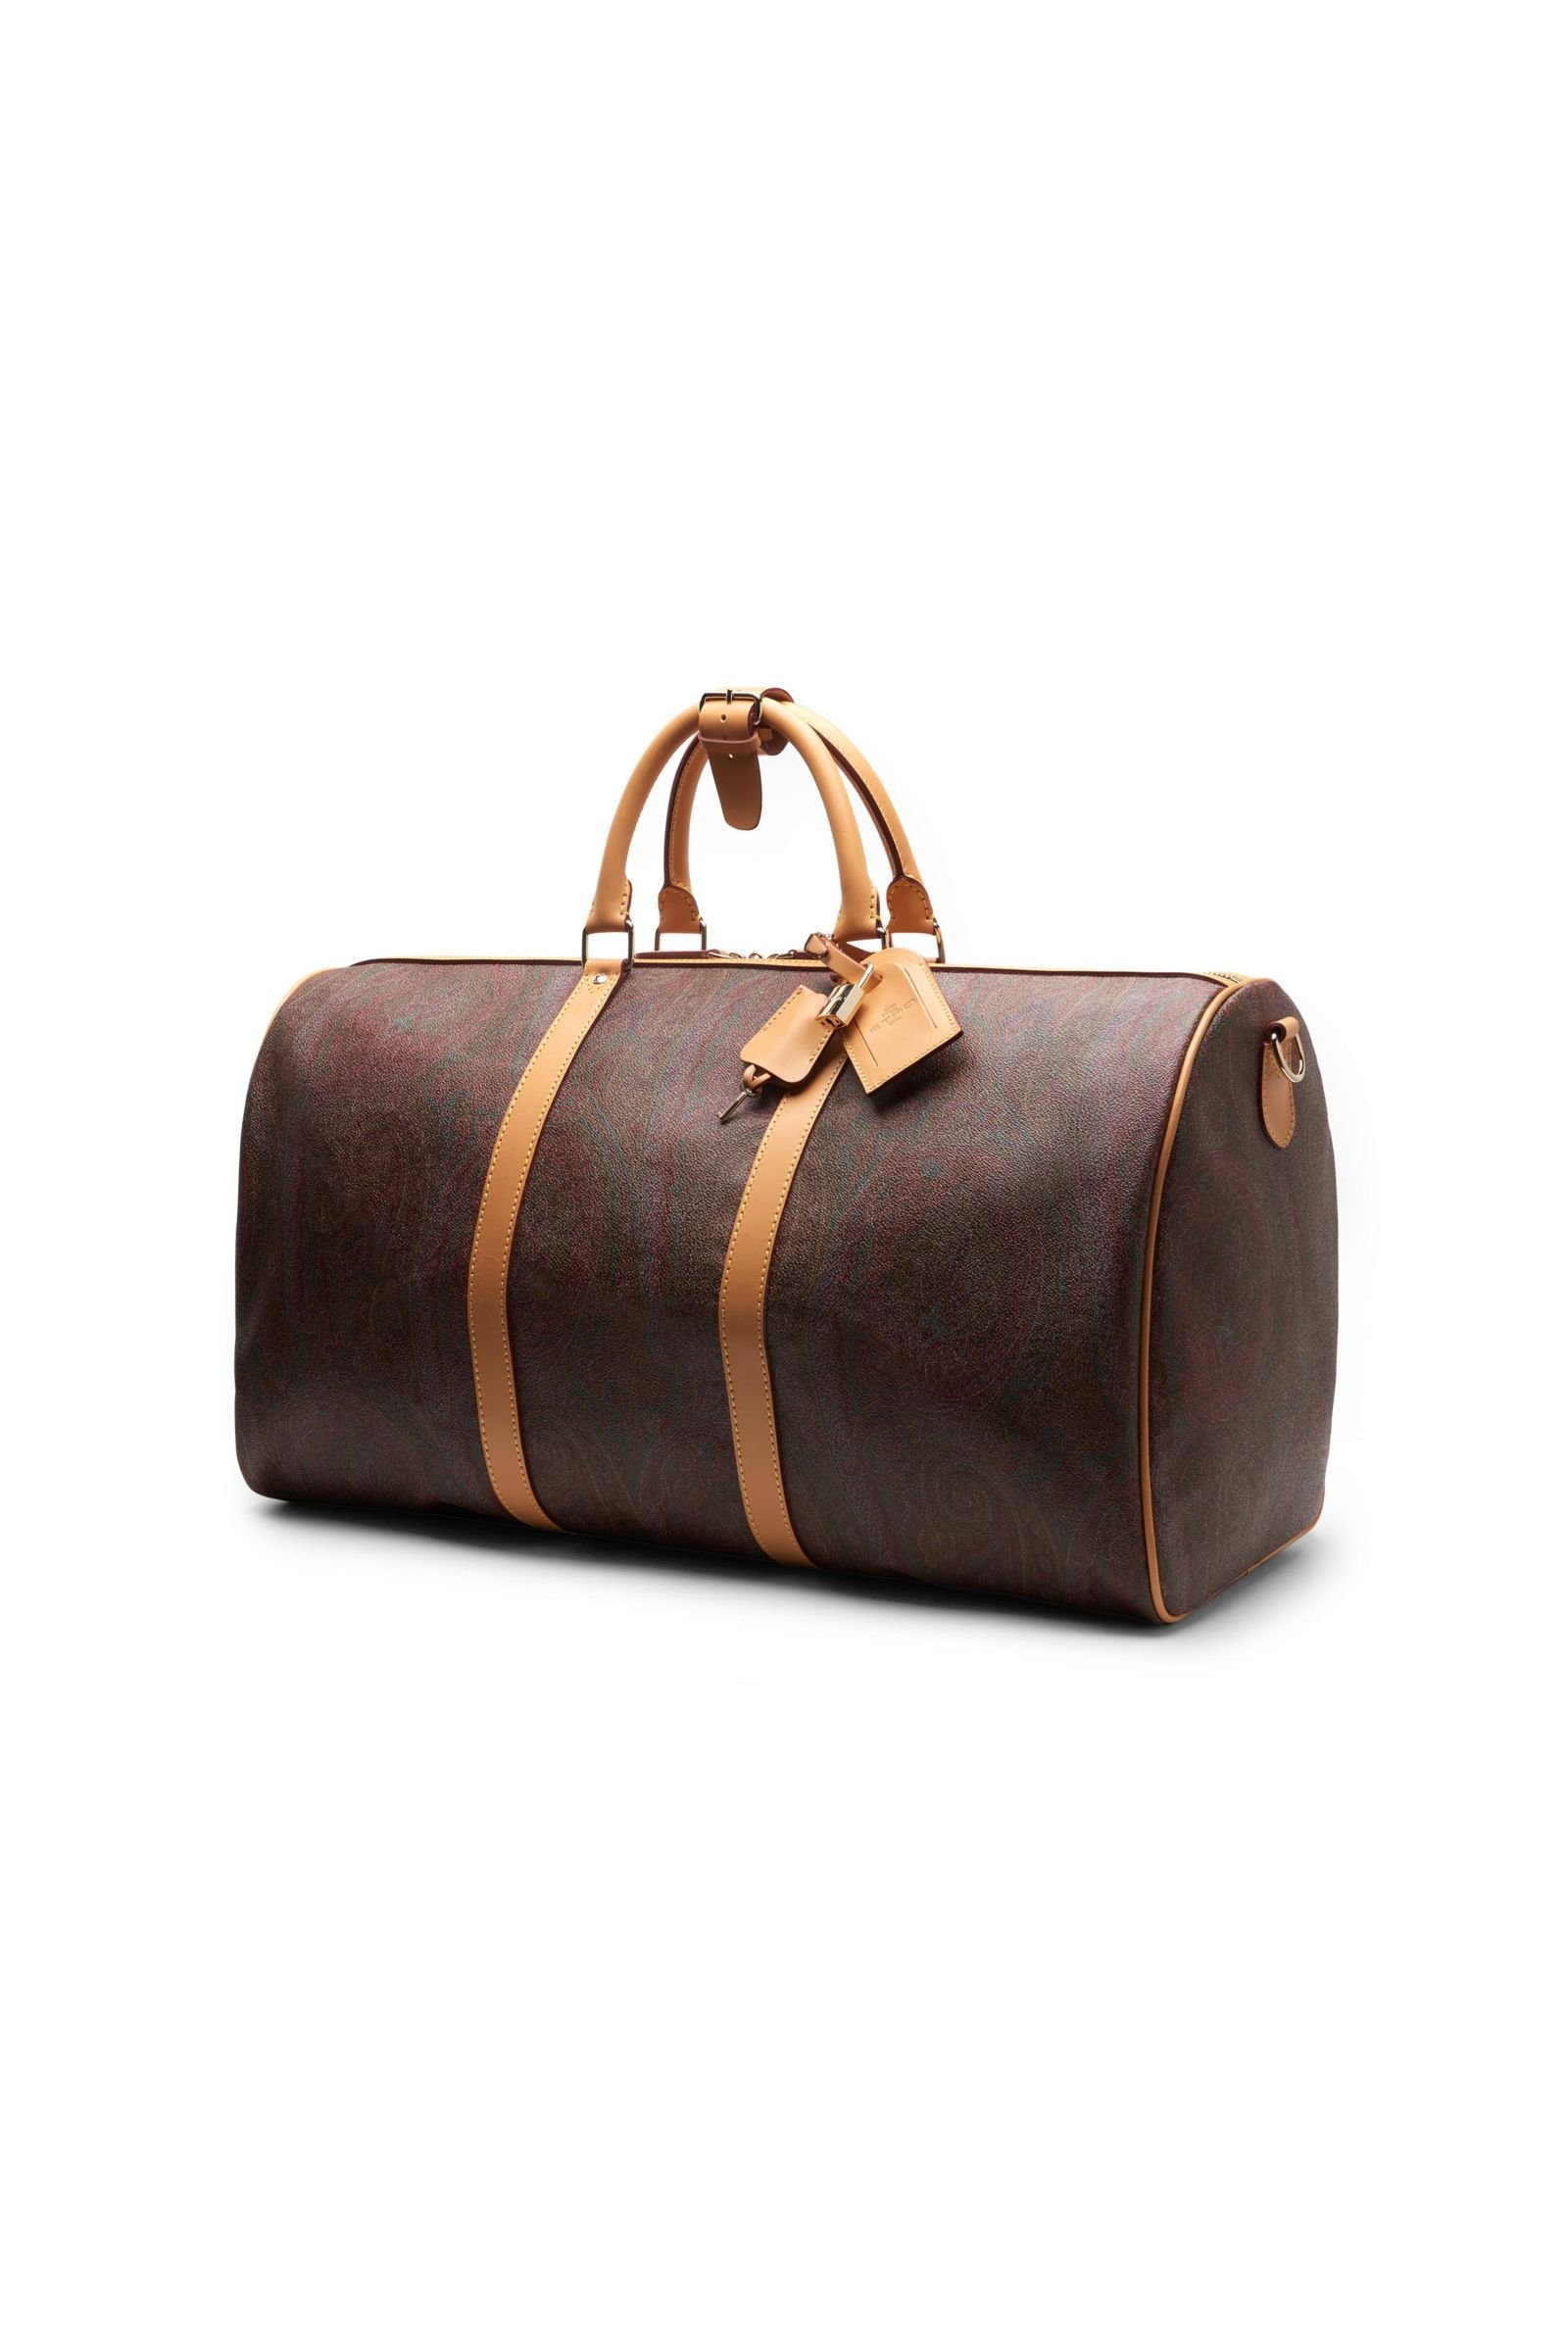 Travel bag brown patterned